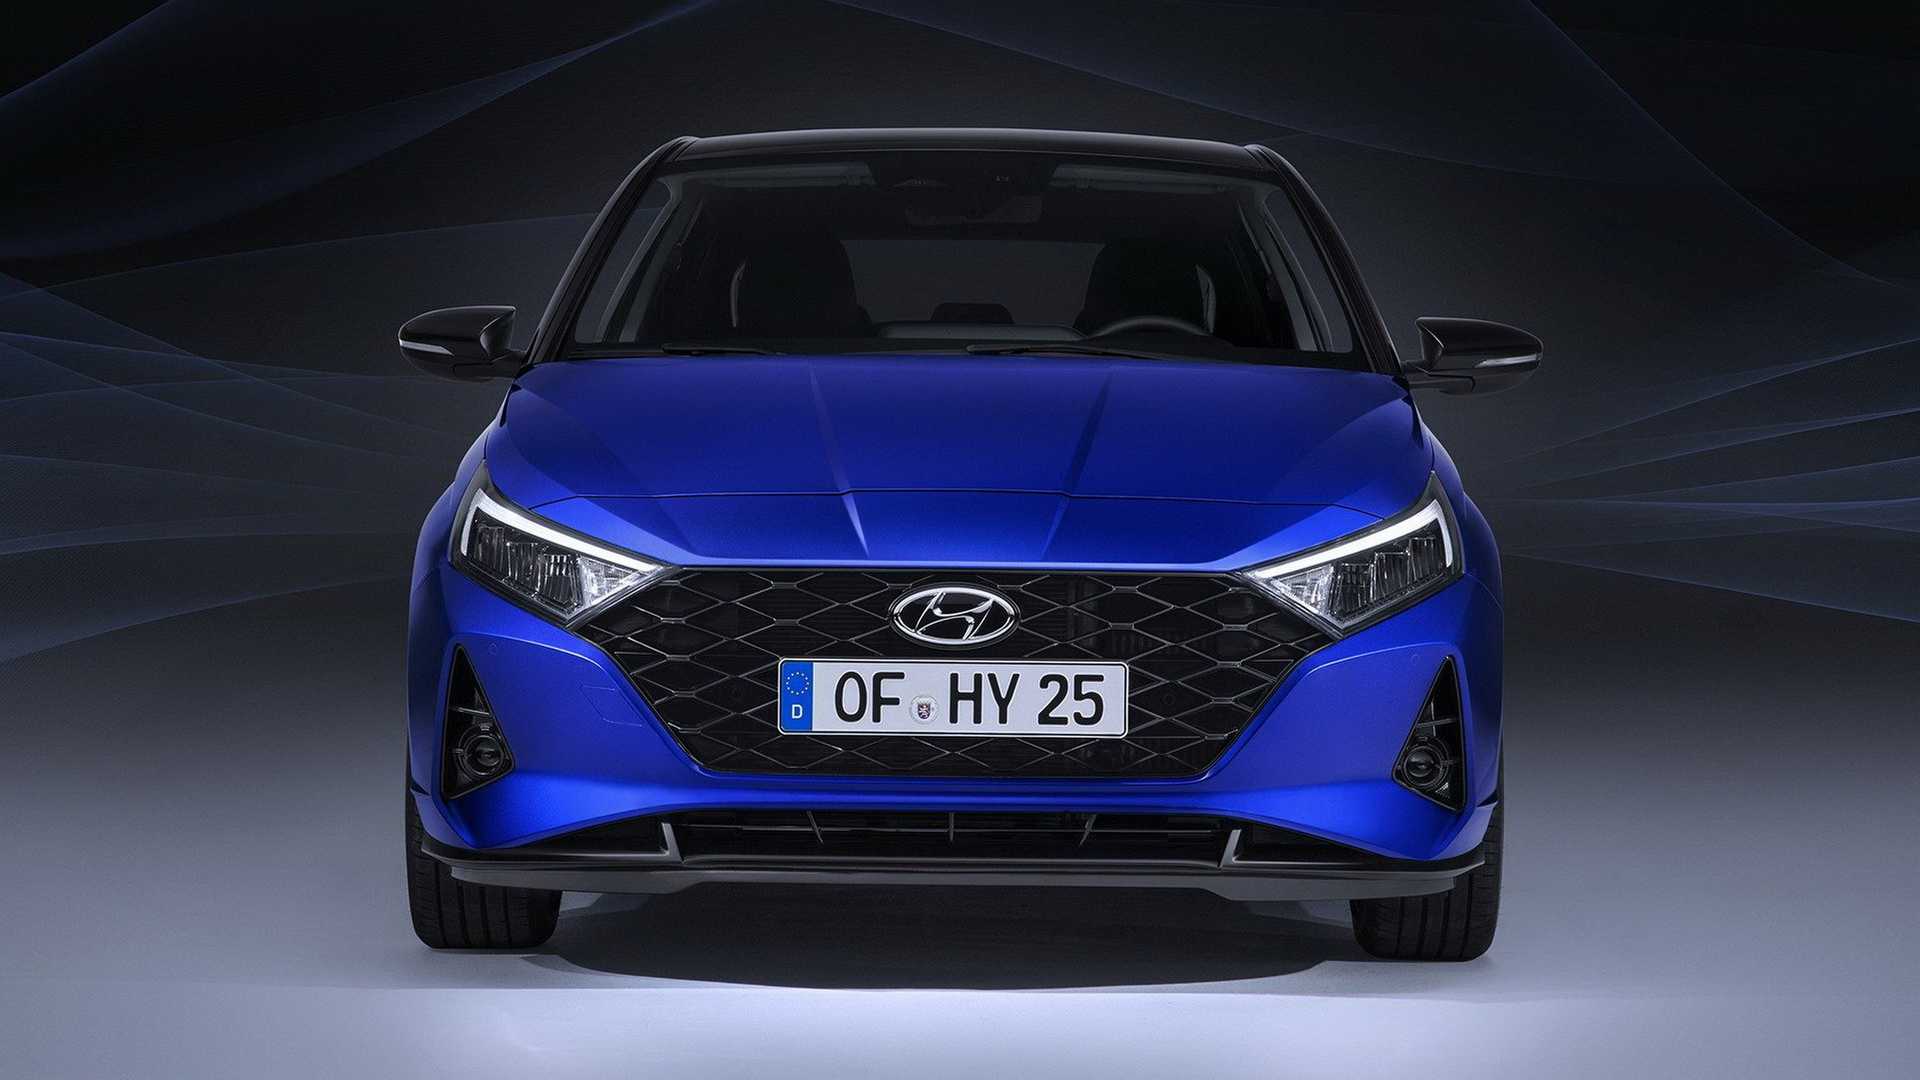 2020 Hyundai i20